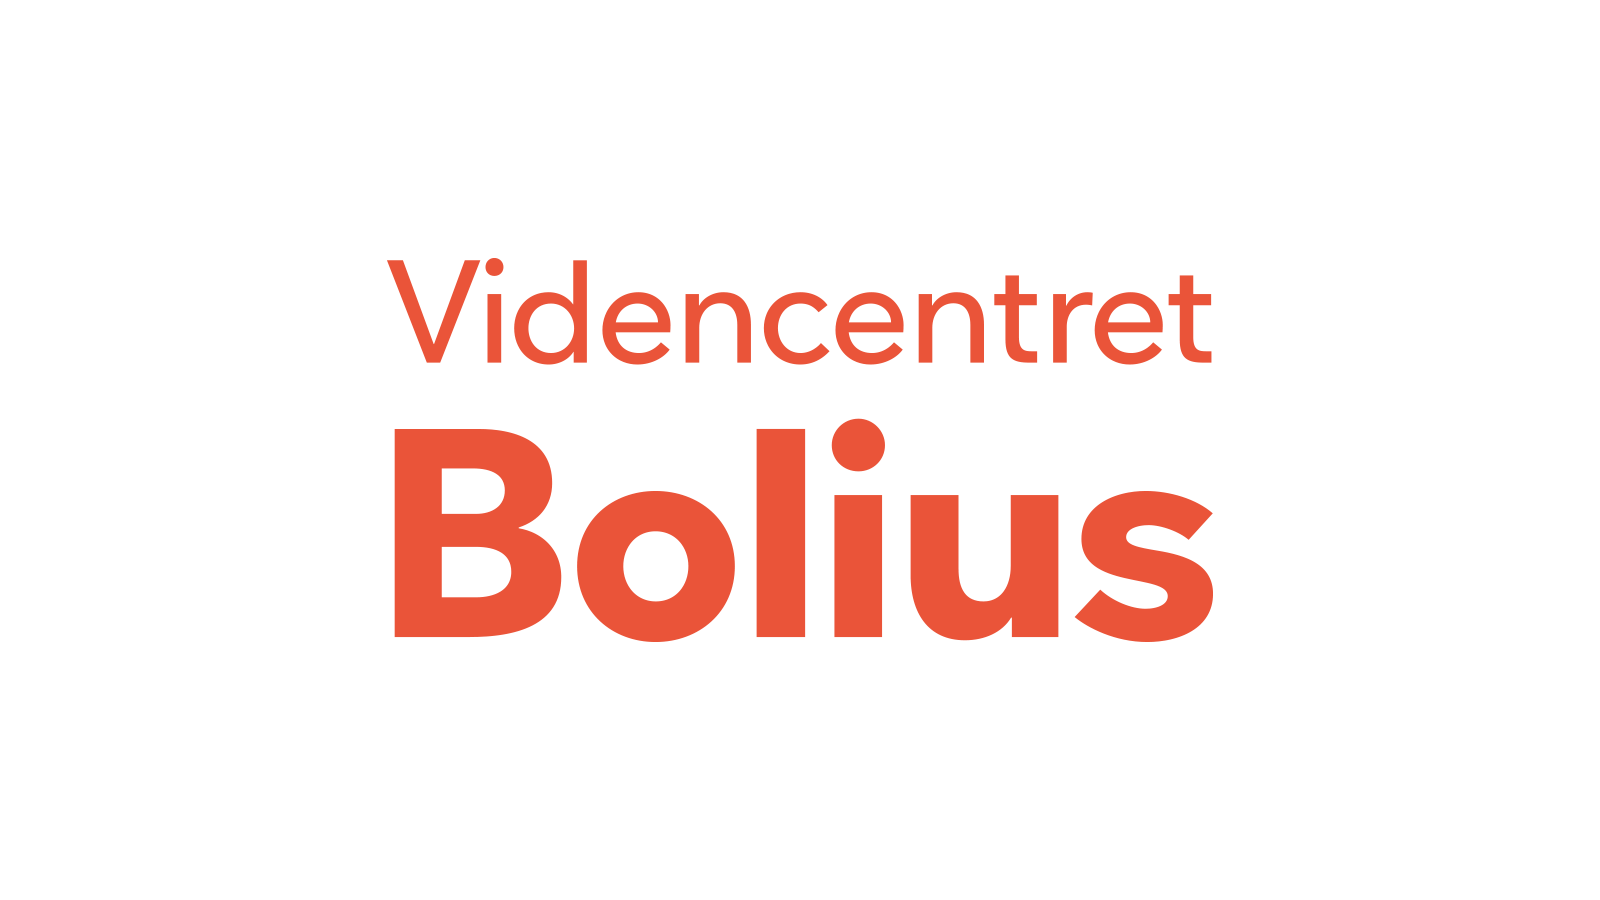 Bolius